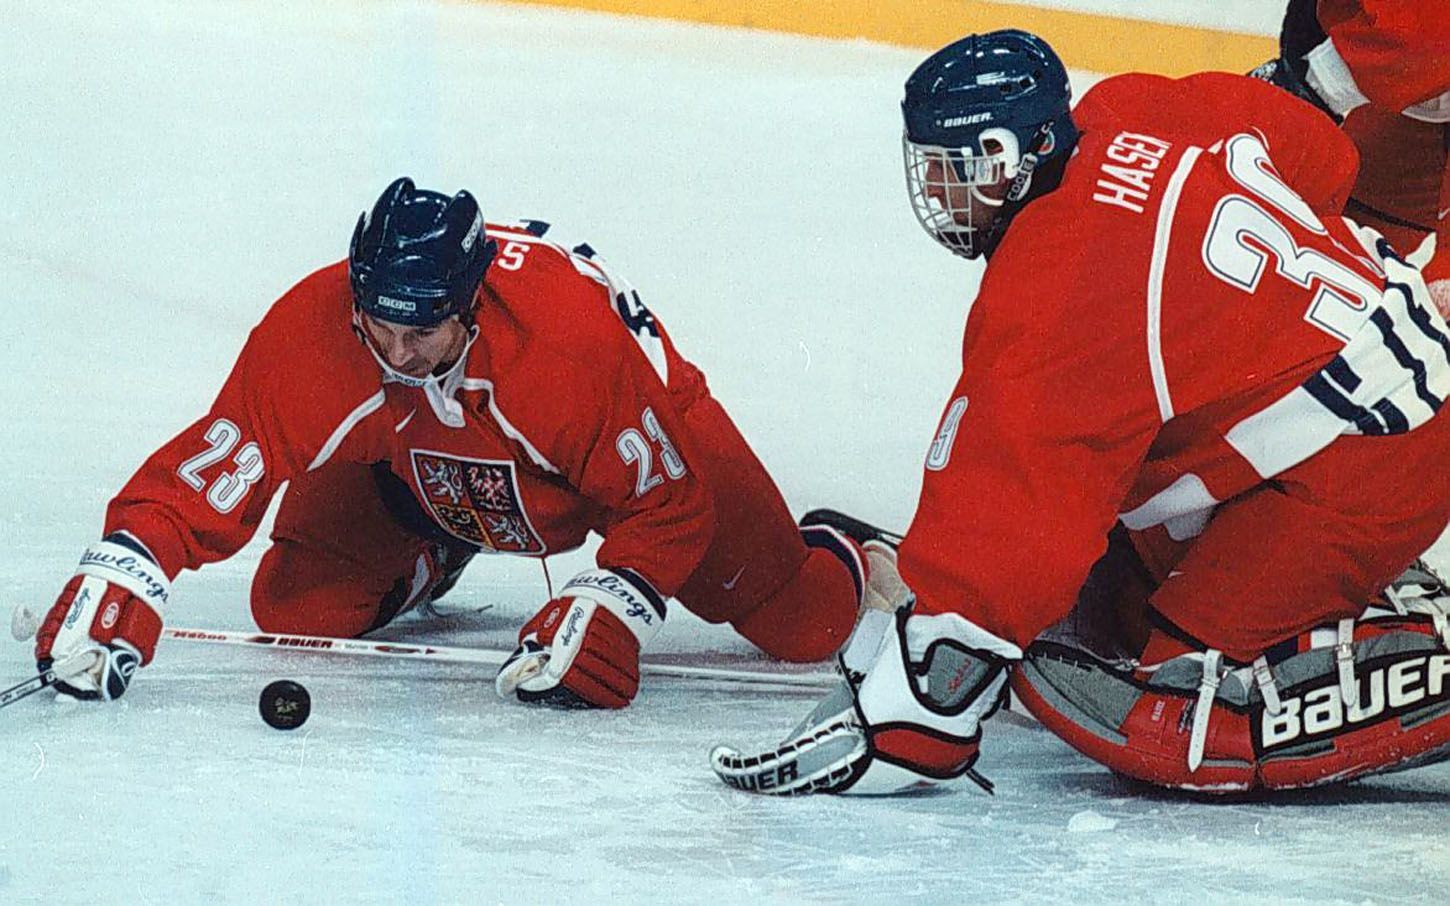 Archivní snímky z ZOH Nagano 1998 - hokej